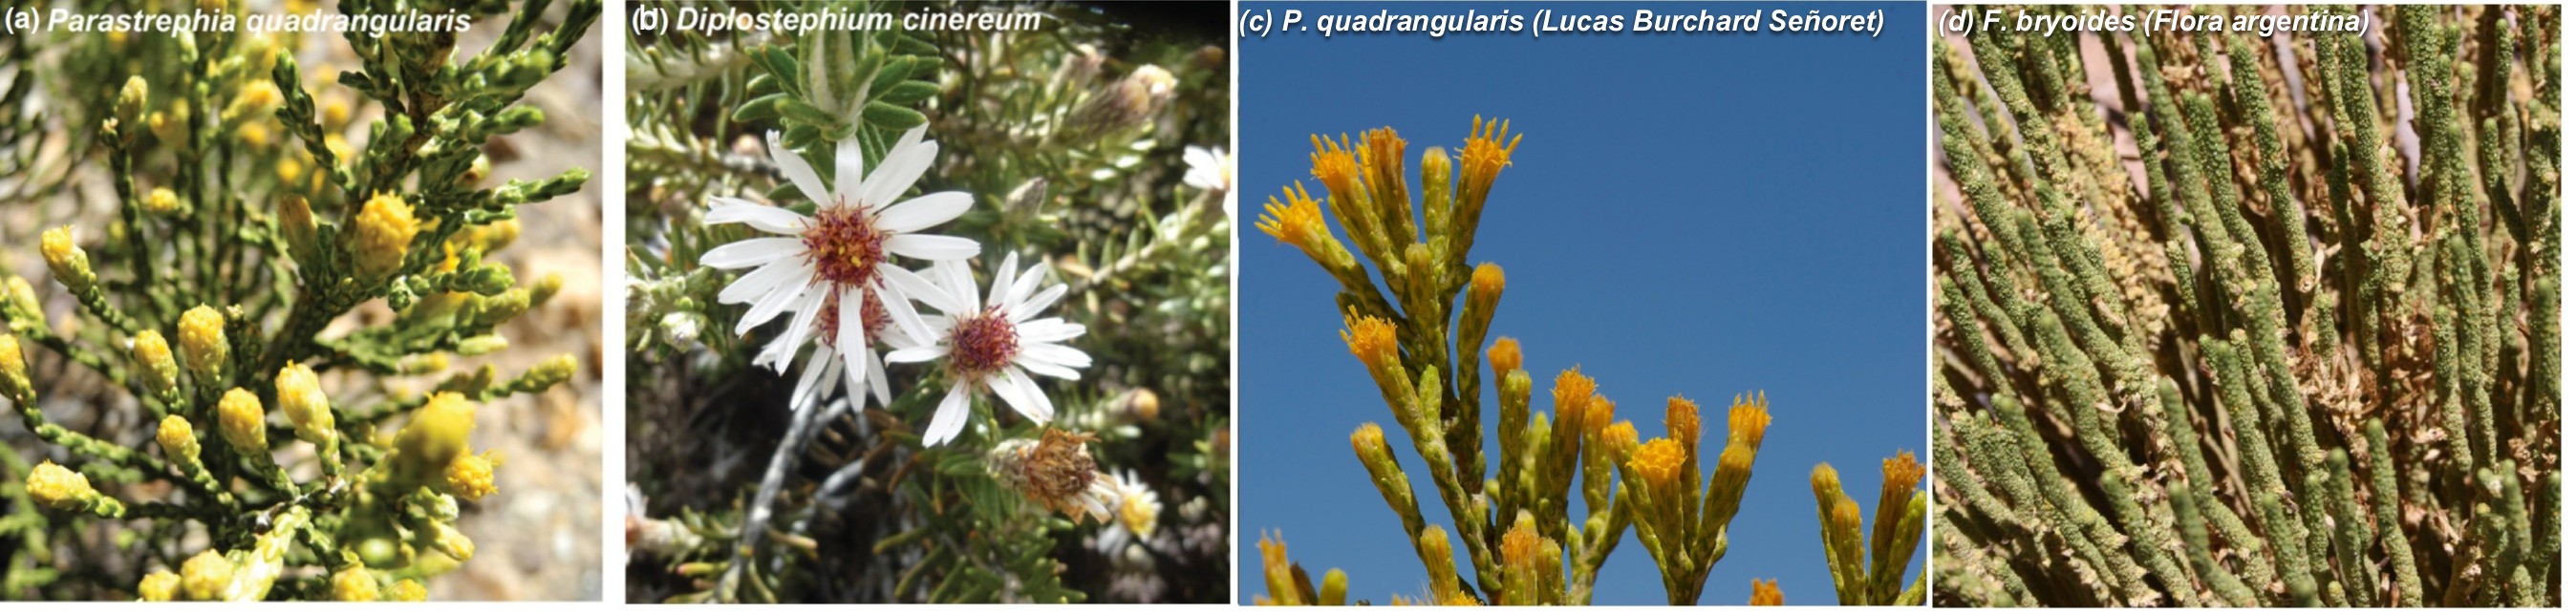 D. cinereum vs P. quadrangularis vs F. bryoides